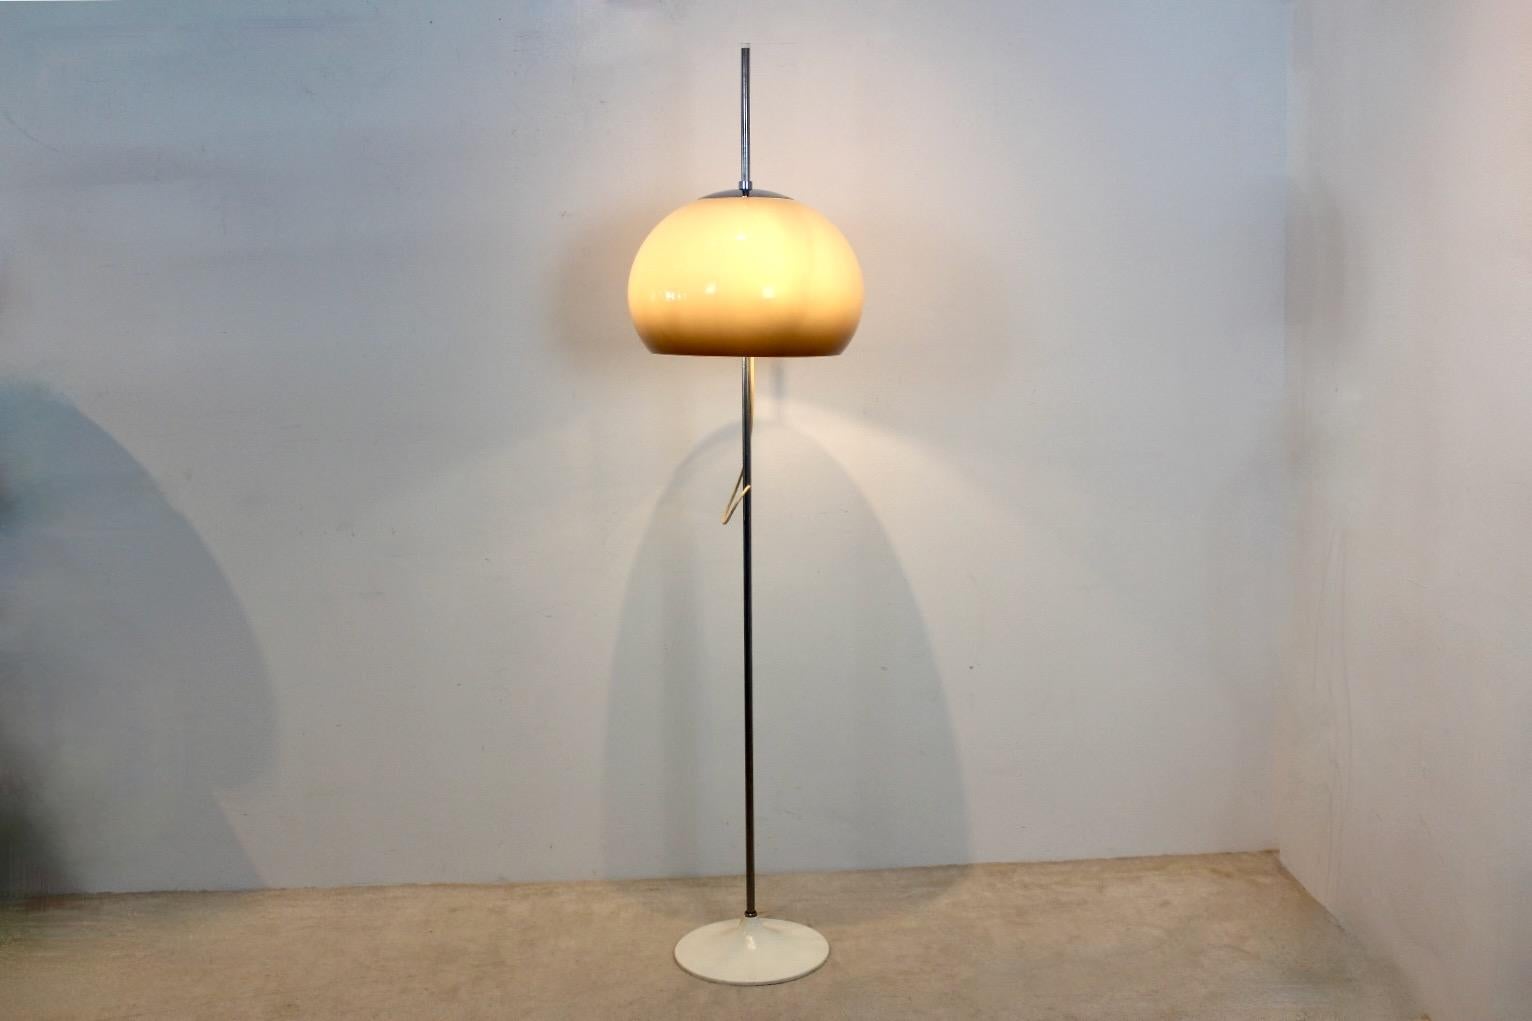 Lampe de sol iconique en chrome et sable crémeux conçue par Gepo dans les années 60. Ce lampadaire impressionnant comporte une barre chromée avec un abat-jour de couleur sable et une base Arco blanche. Il est équipé de 3 lampes réglables et d'un